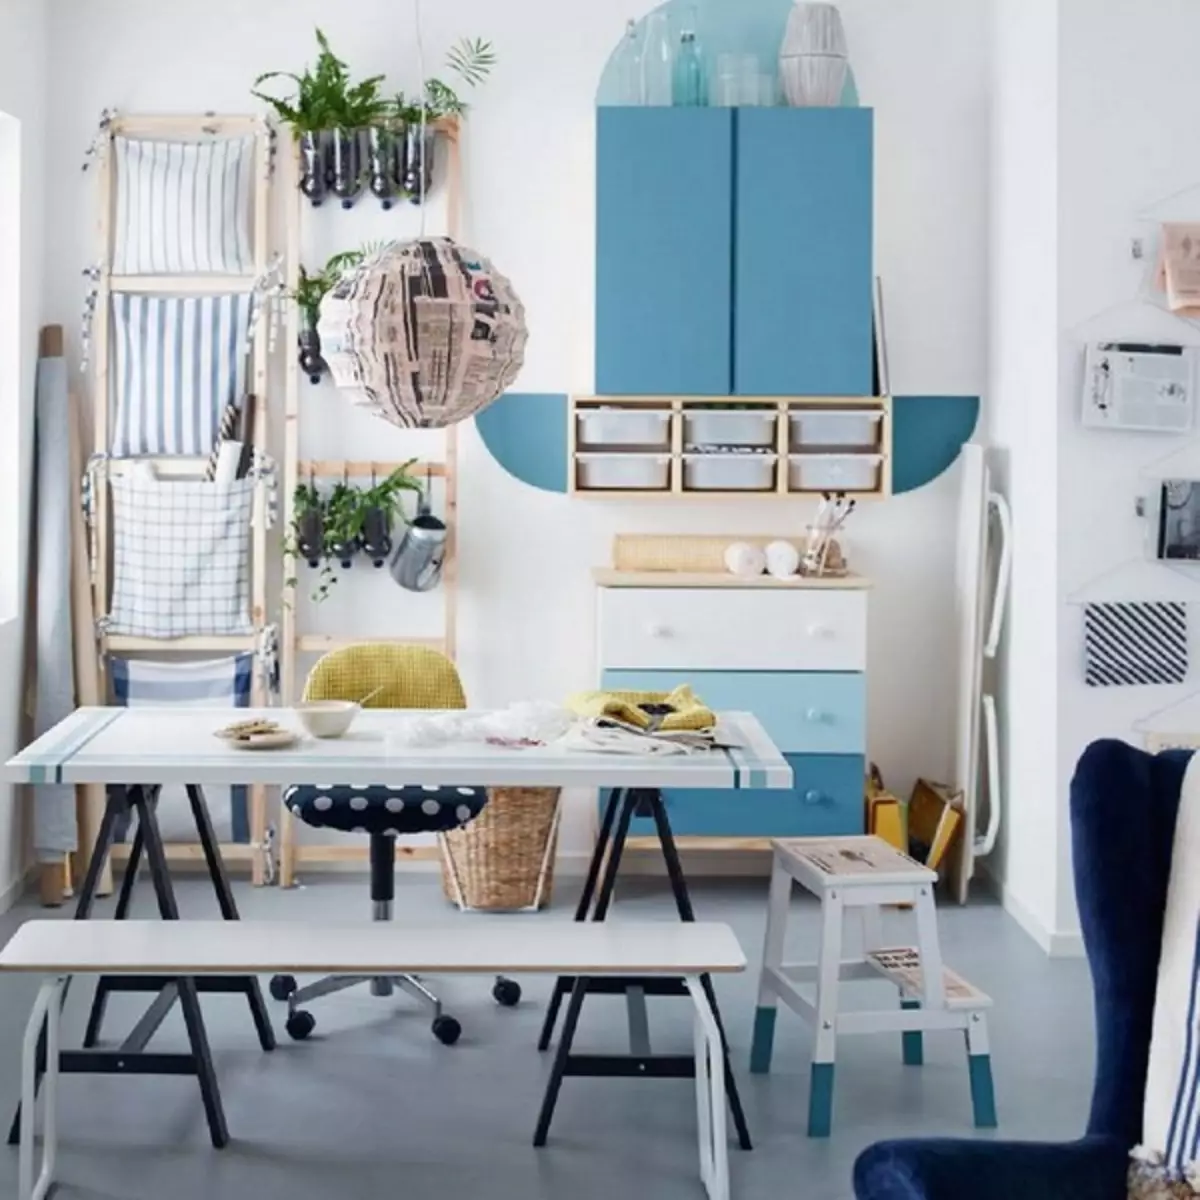 Gyvenamieji kambariai iš IKEA 2019 katalogo (17 nuotraukų)